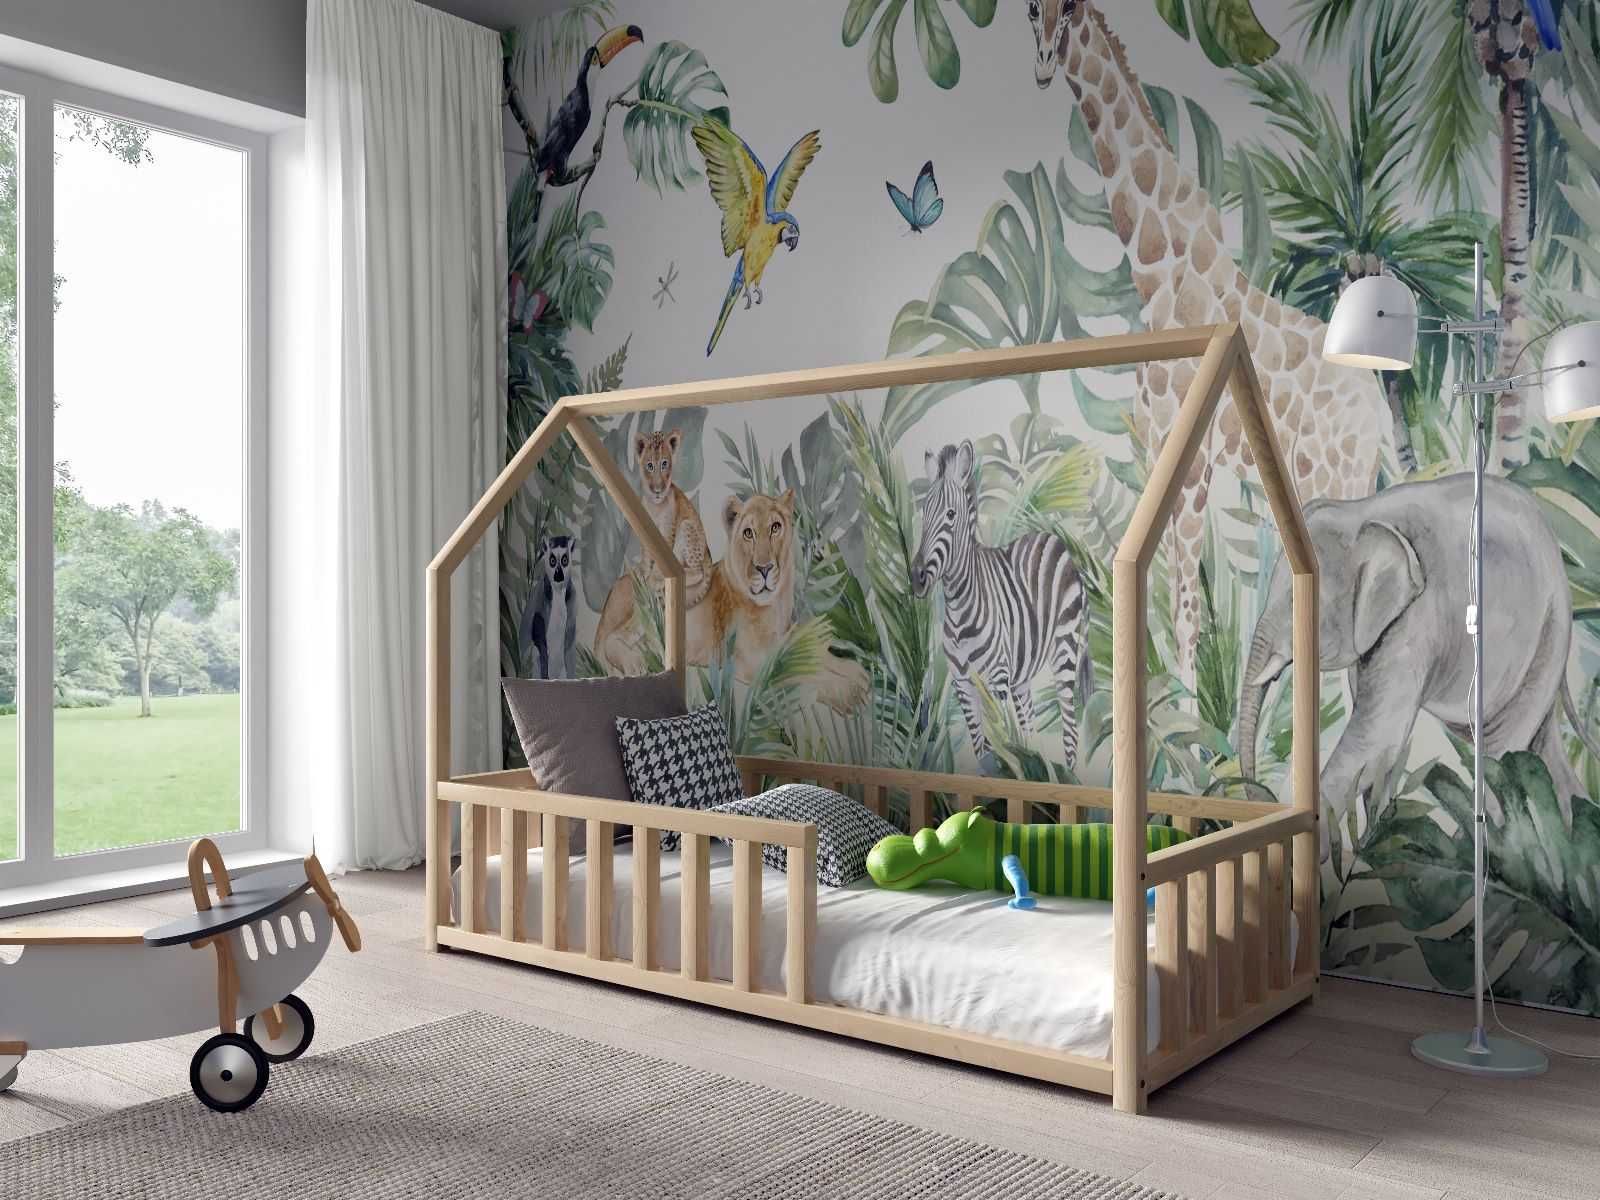 Nowe łózko domek dziecięce ANTOŚ 160x80 - materac gratis